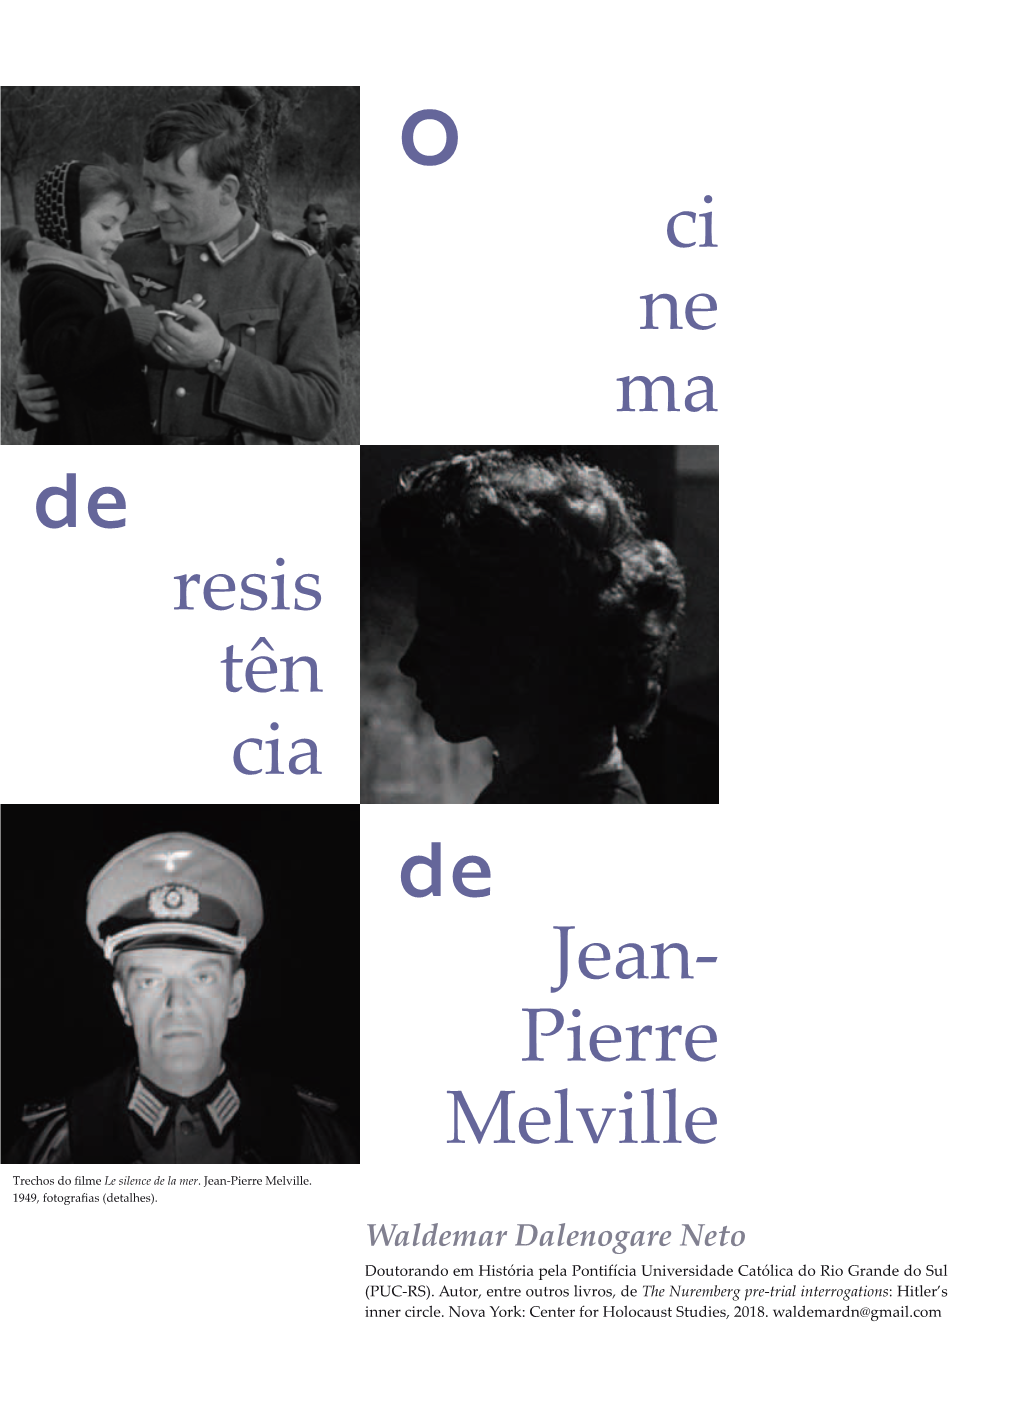 Jean- Pierre Melville Ci Ne Ma Resis Tên